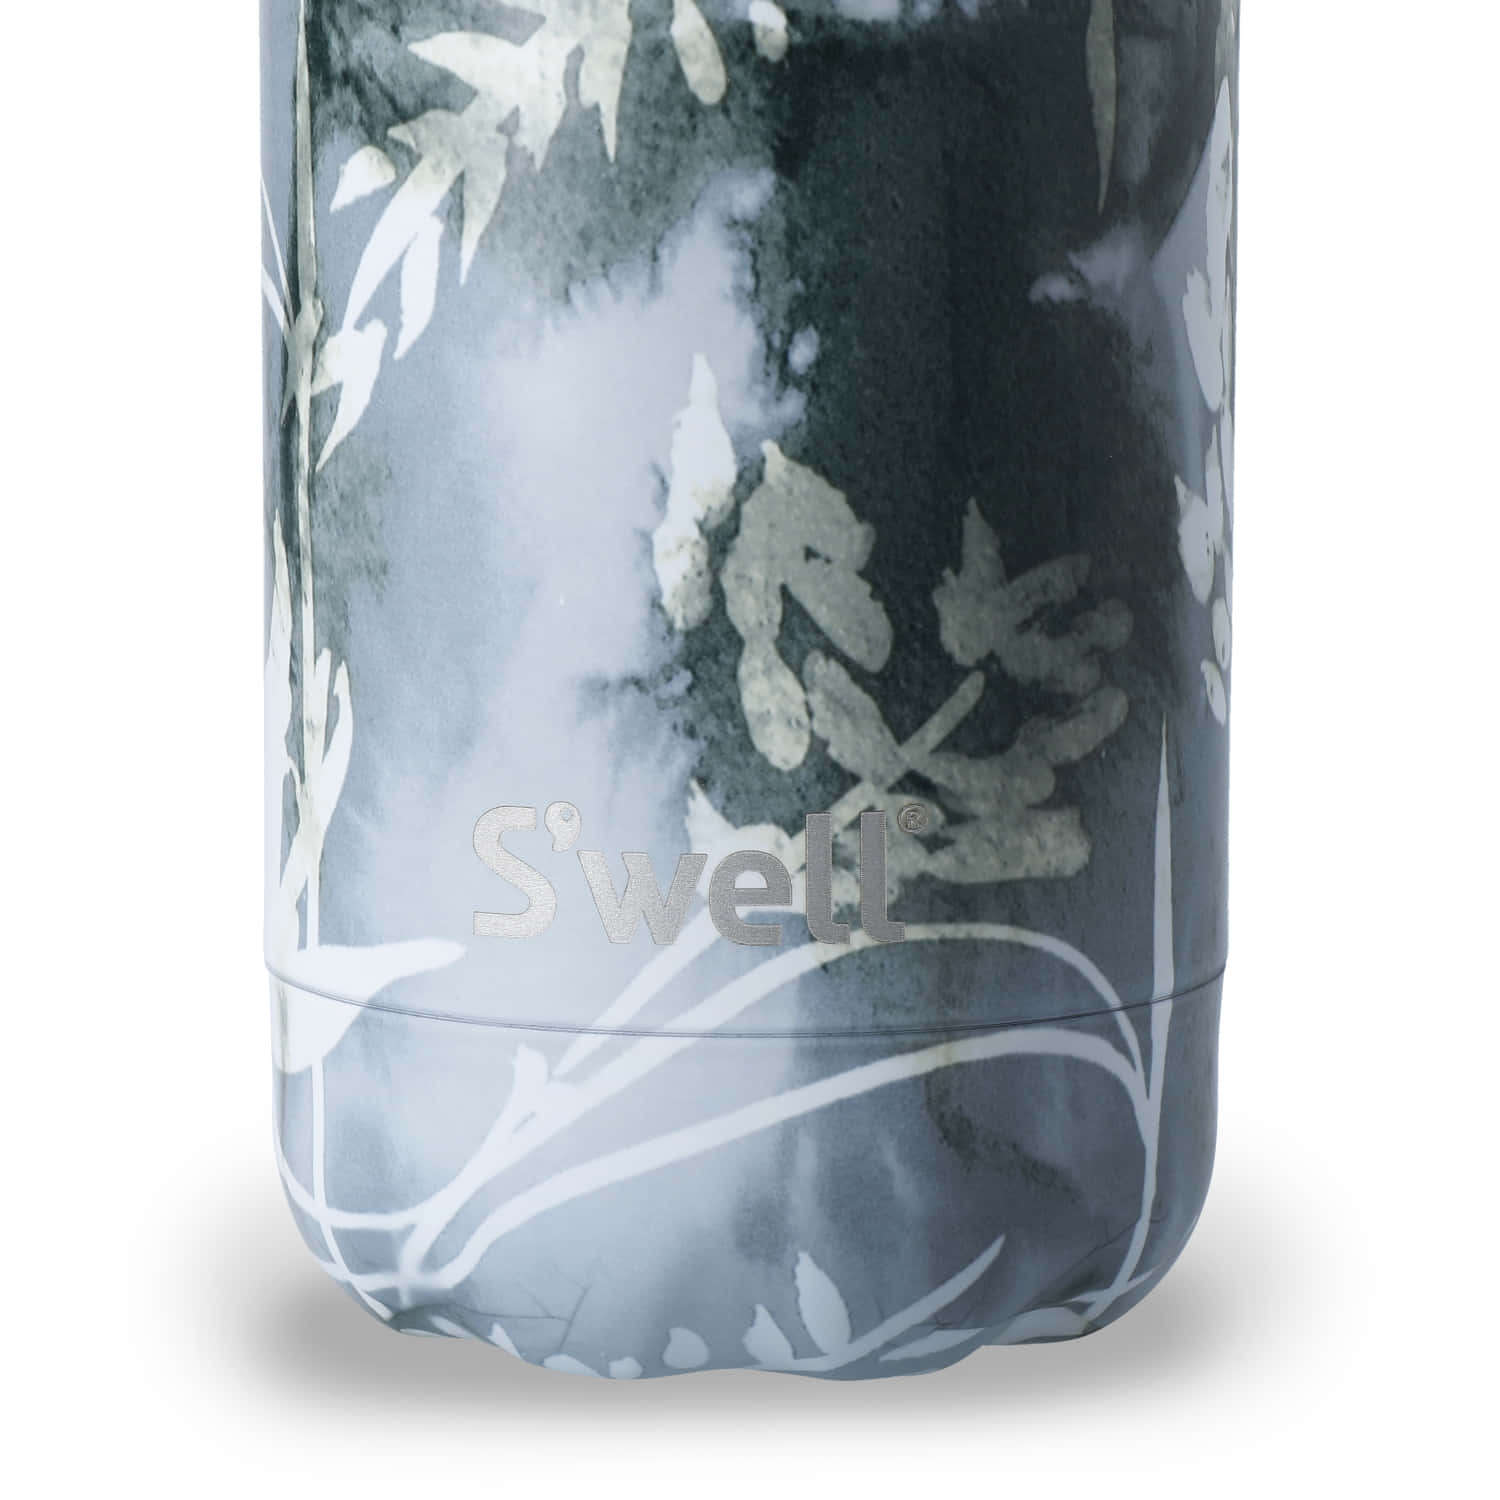 S'well Blue Foliage - Water Bottle 500ml